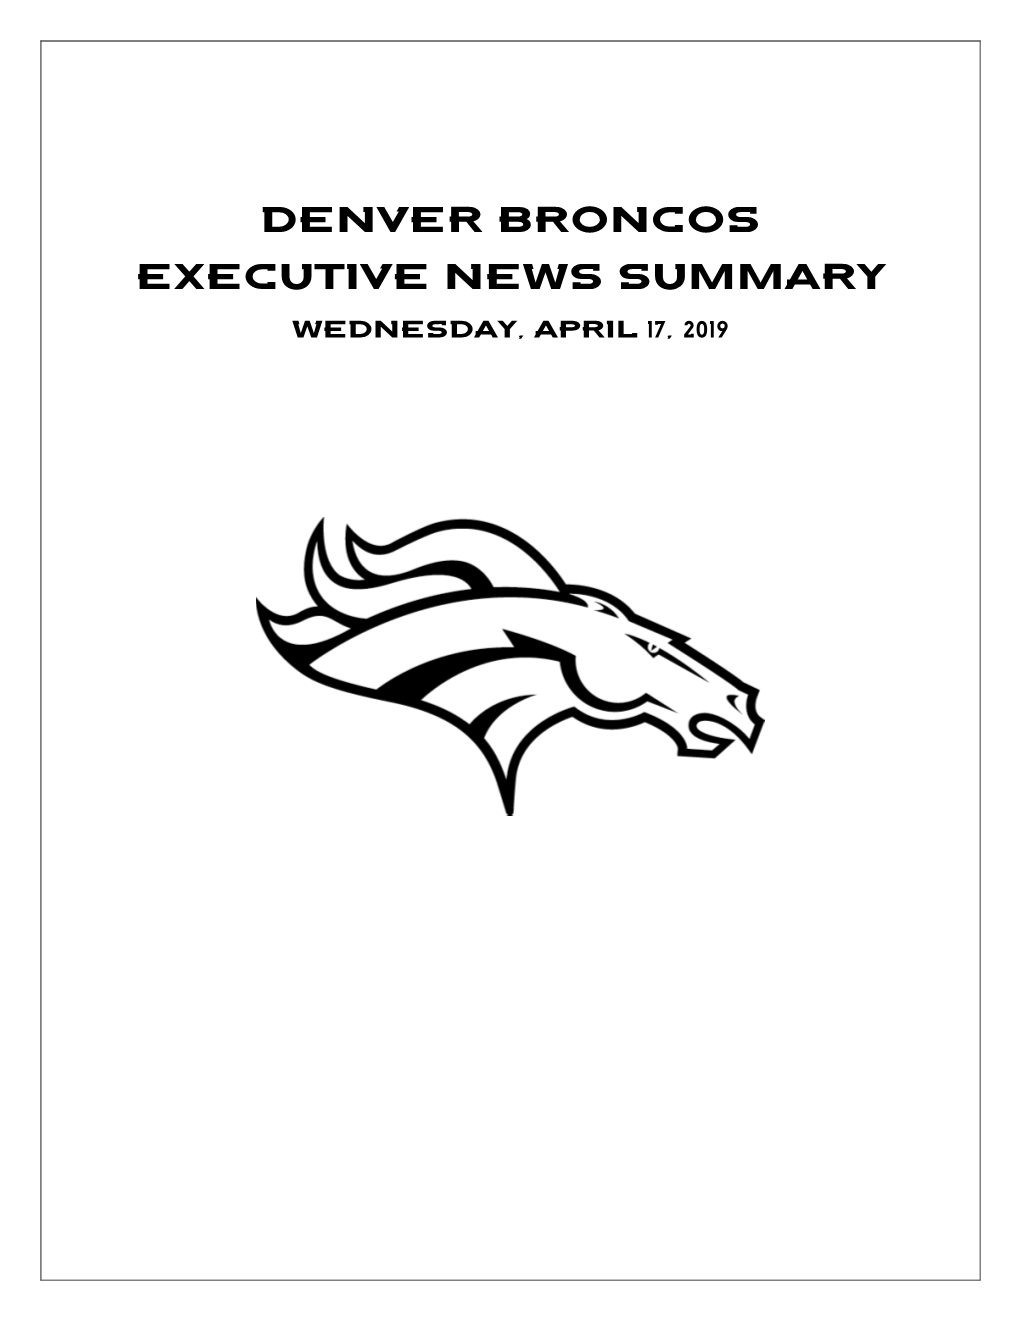 Denver Broncos Executive News Summary WEDNESDAY, APRIL 17, 2019